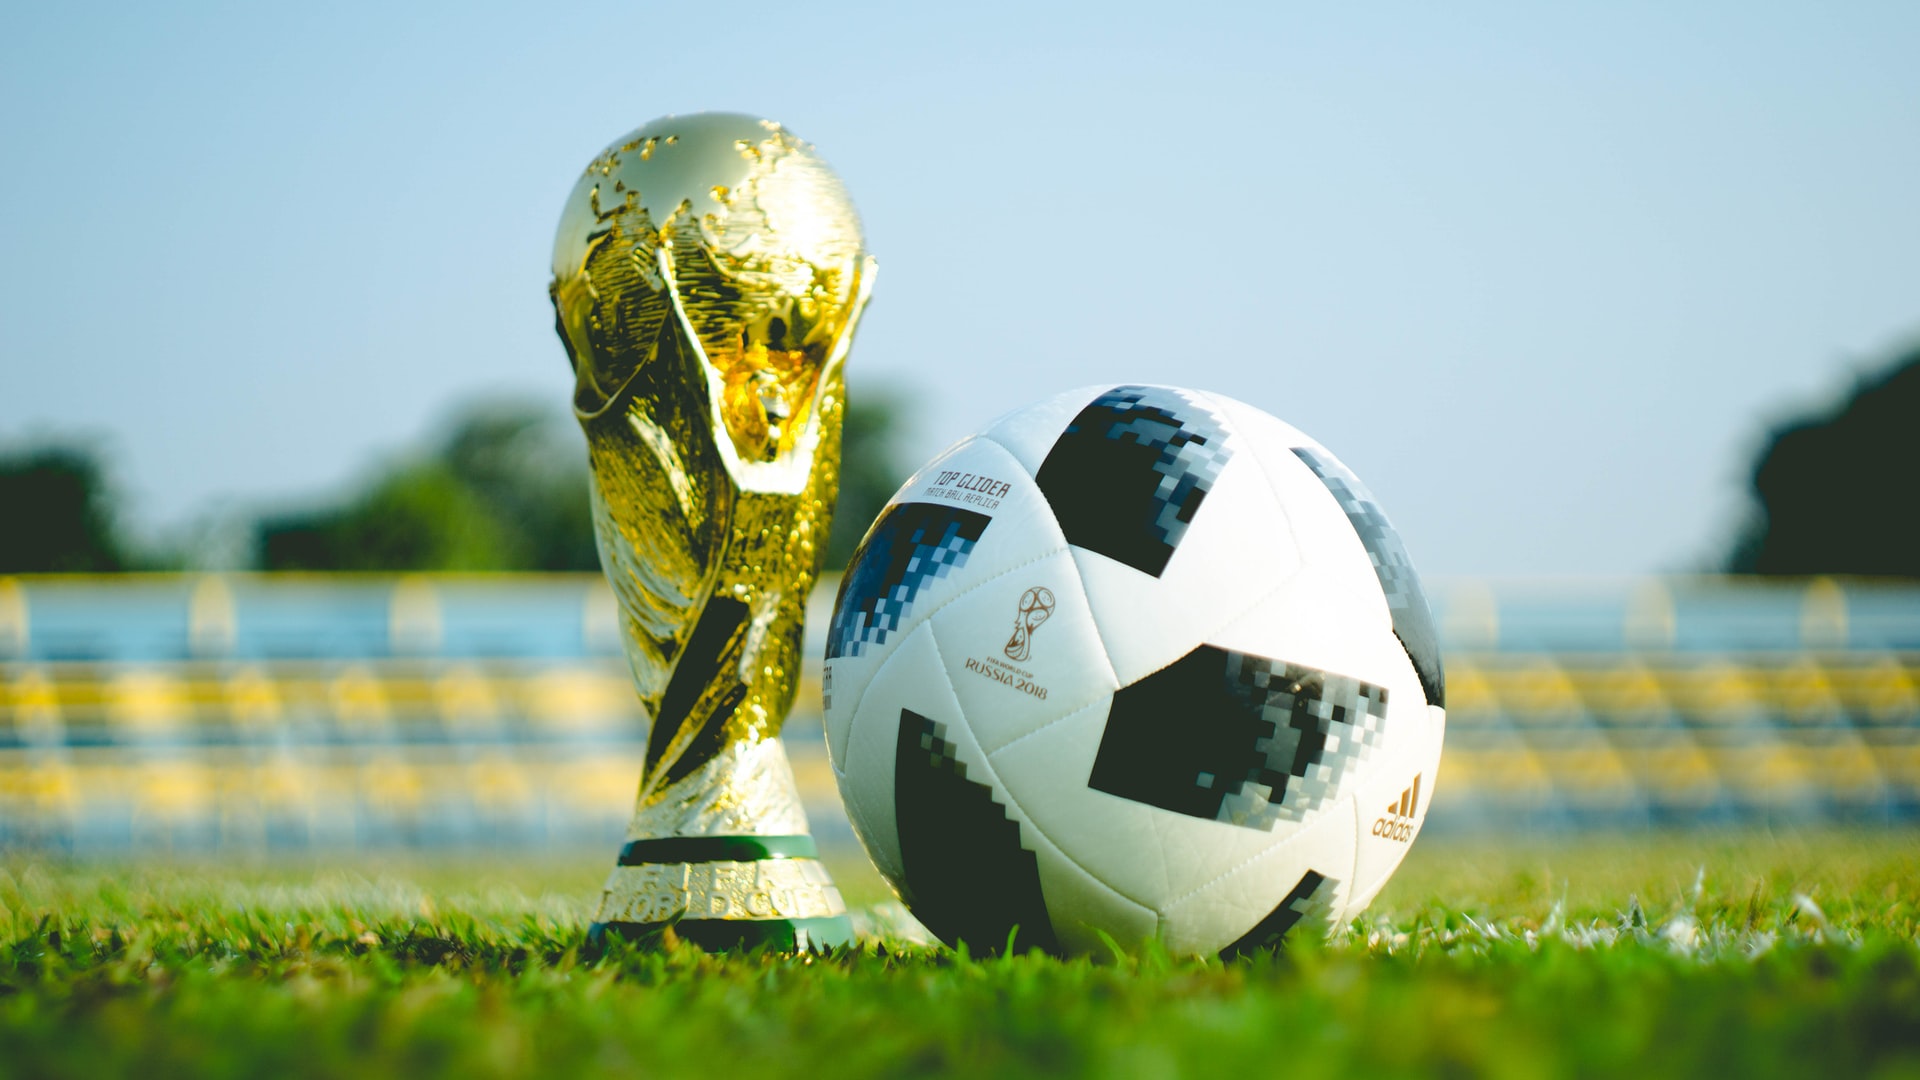 Acompanhe o Mundial de Futebol 2018 com estas aplicações e serviços